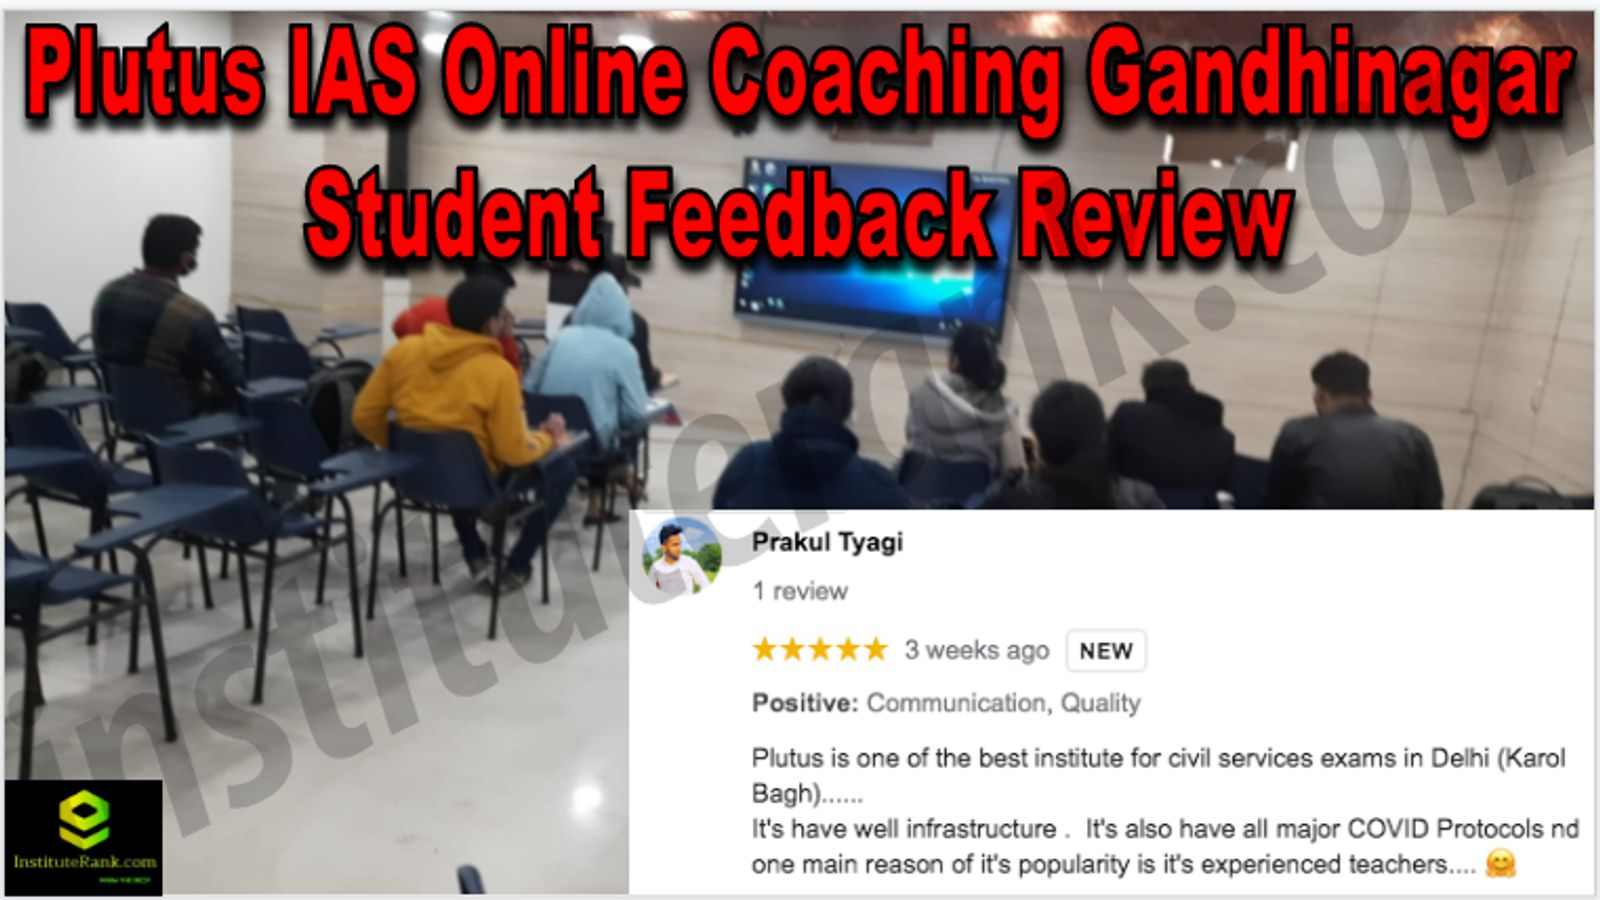 Plutus IAS Online Coaching Gandhinagar Student Feedback Reviews